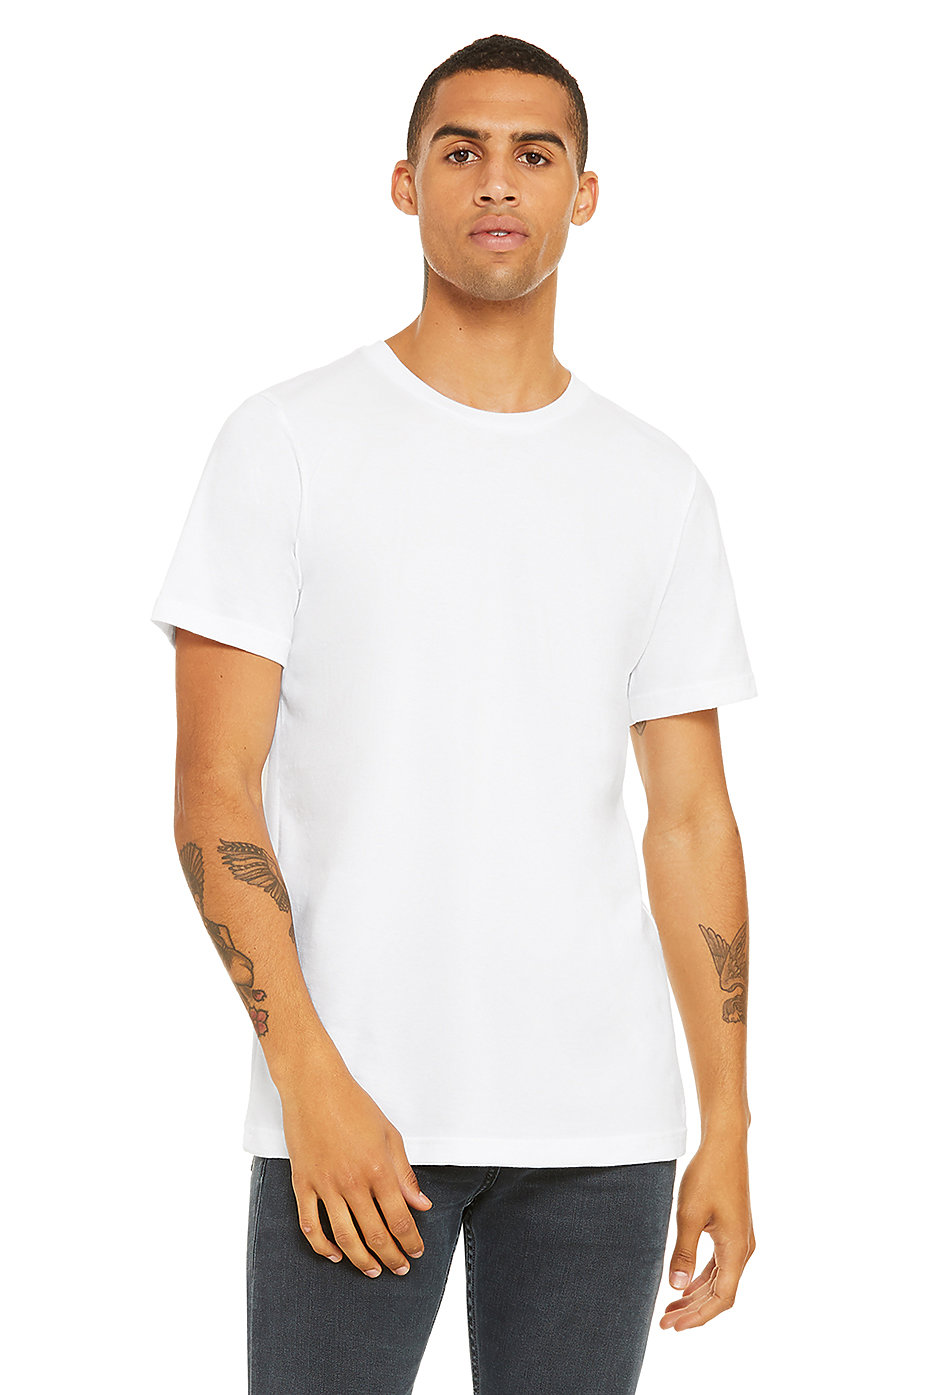 Bella Canvas Mens Jersey Short-Sleeve T-Shirt 